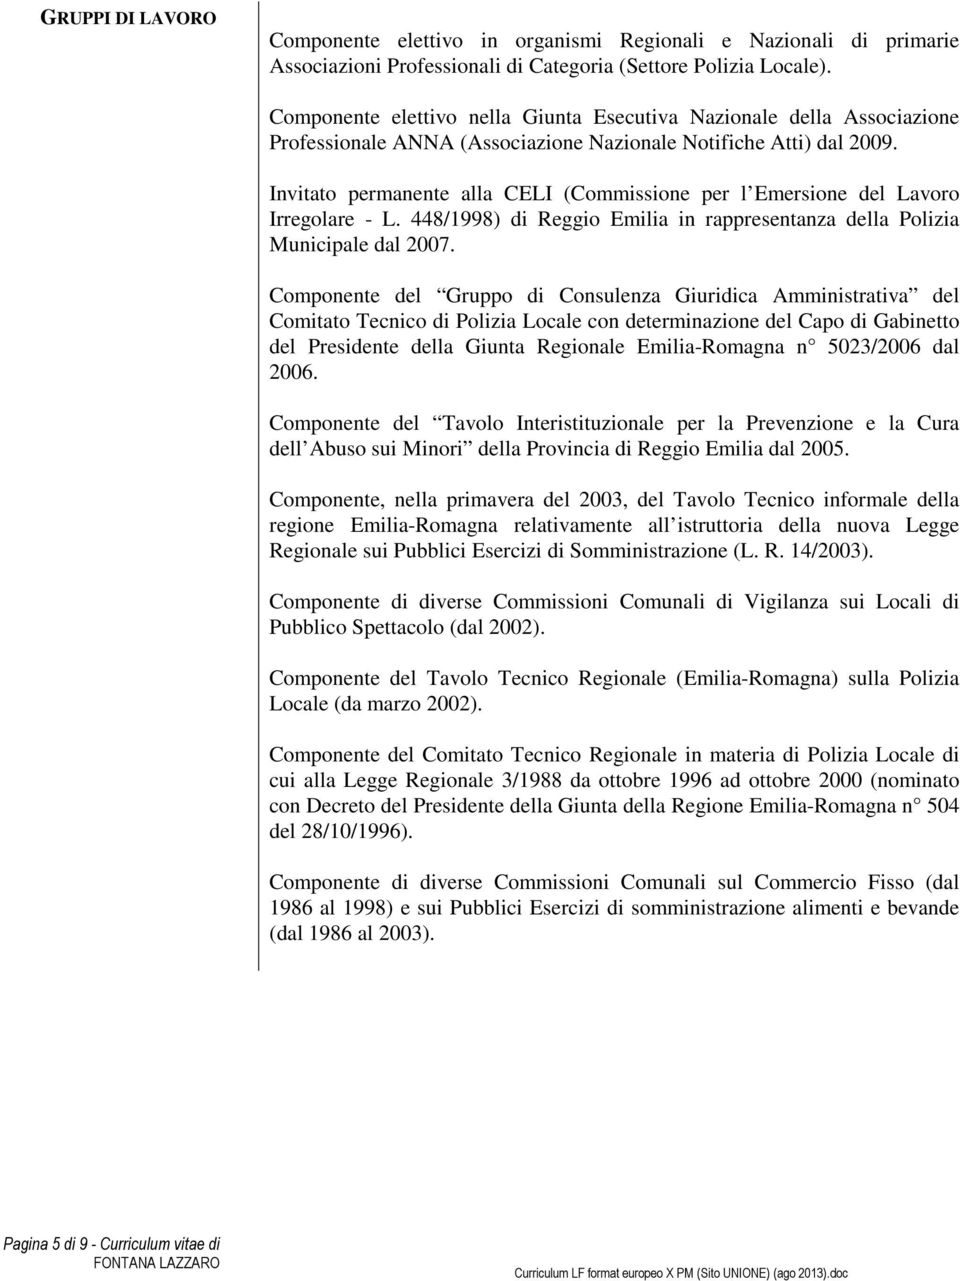 Invitato permanente alla CELI (Commissione per l Emersione del Lavoro Irregolare - L. 448/1998) di Reggio Emilia in rappresentanza della Polizia Municipale dal 2007.